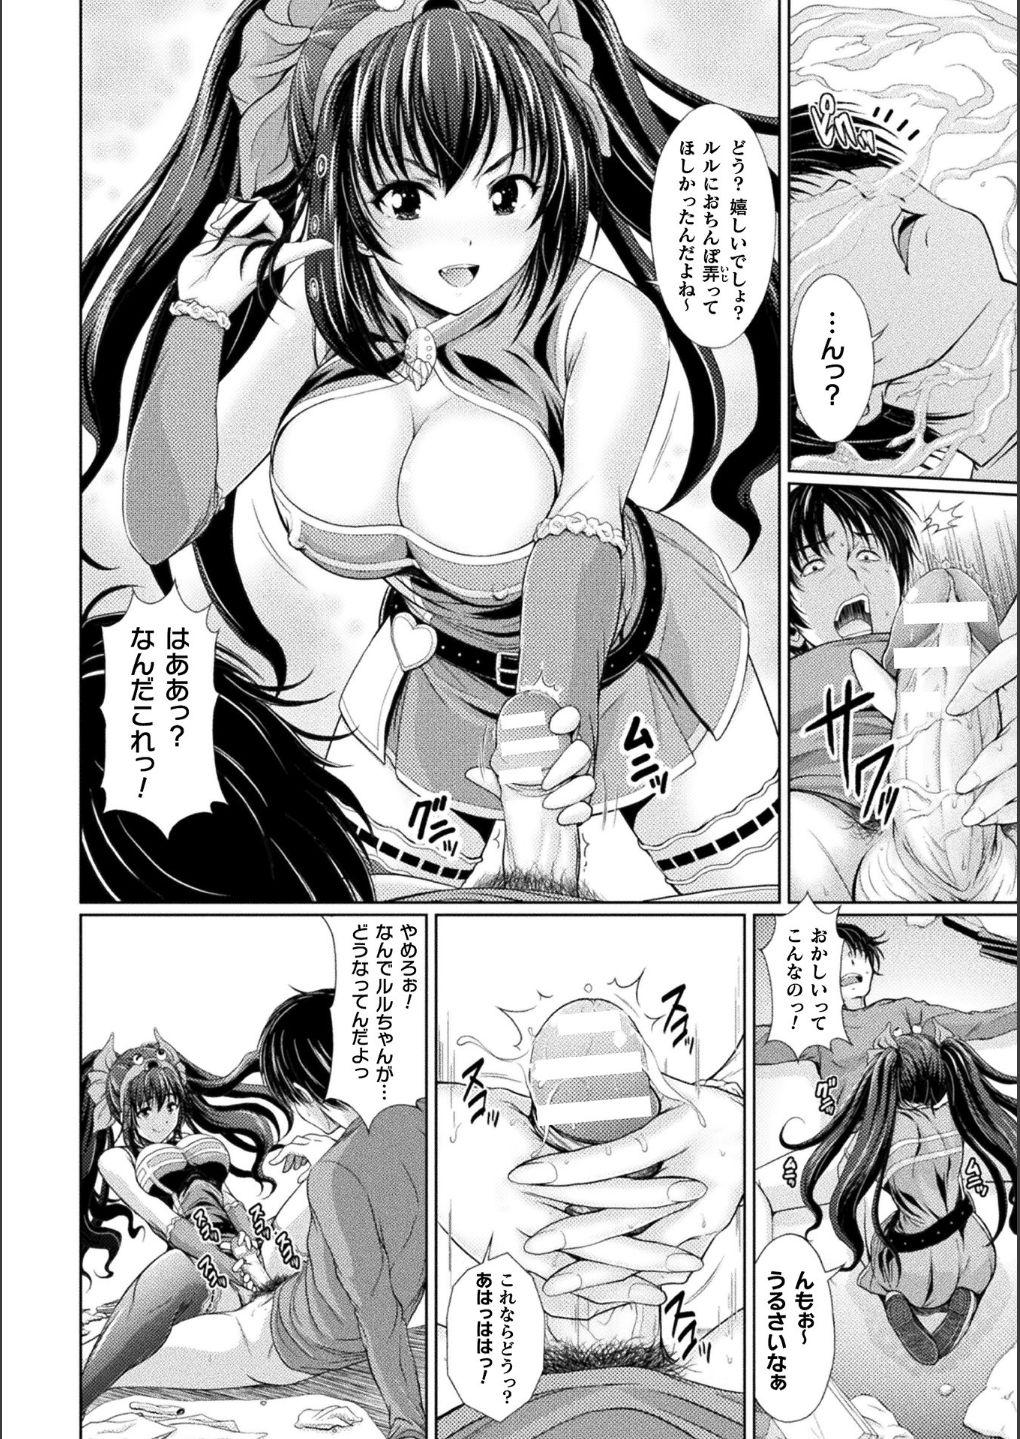 Bessatsu Comic Unreal Bishoujo ni Gitai suru Igyou-tachi Digital Ban Vol. 1 7